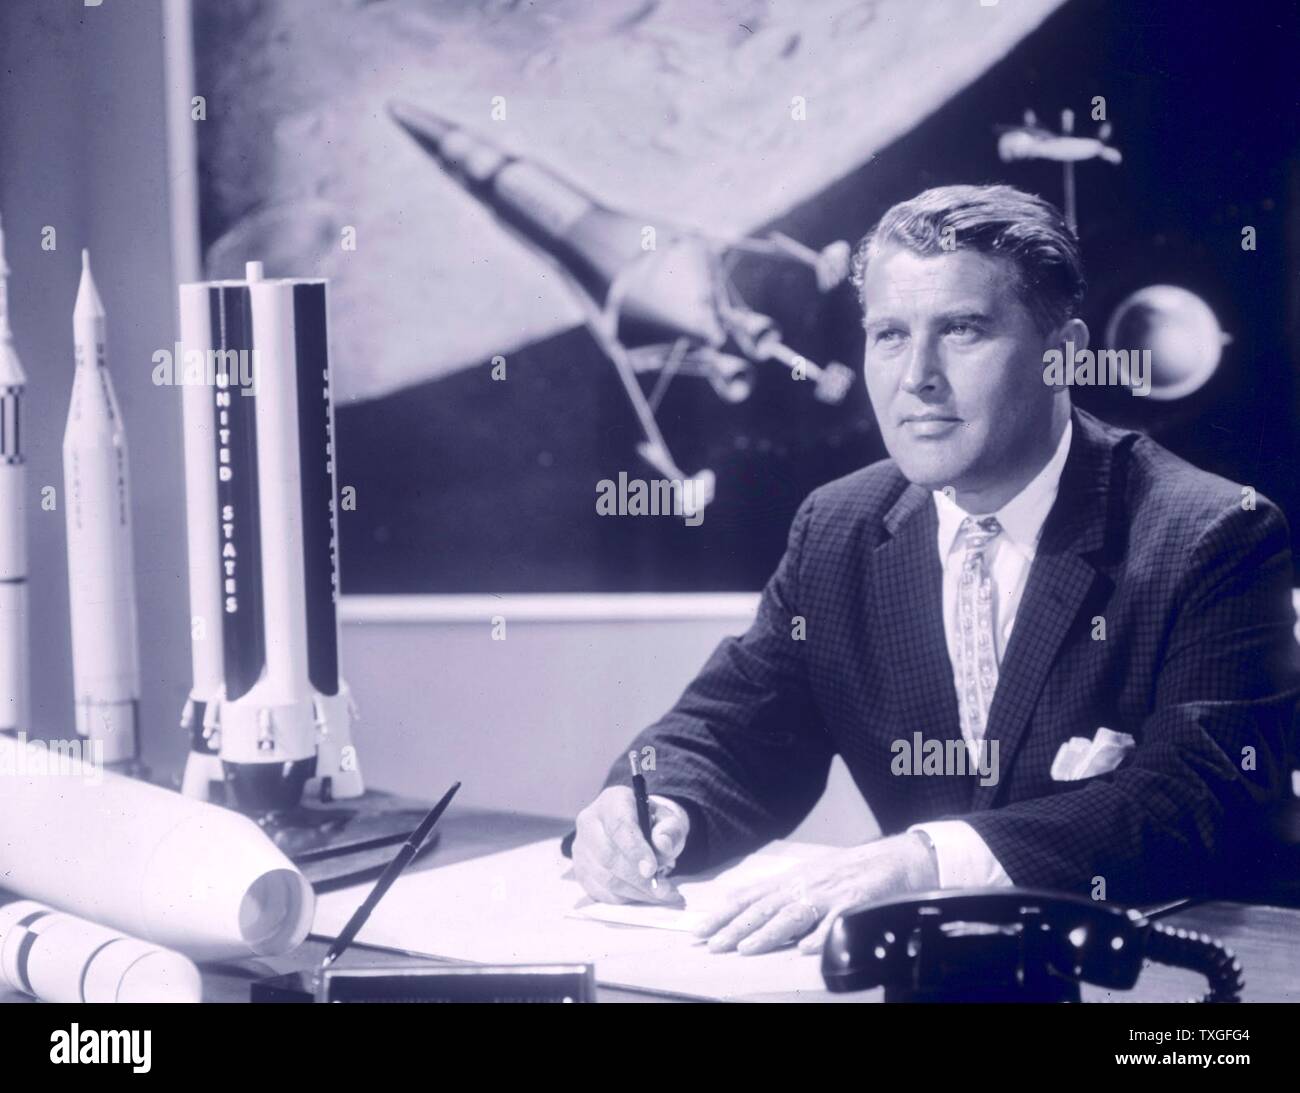 Werner von Braun (1912 - 1977), Alemán (más tarde ingeniero aeroespacial estadounidense), acreditado con la invención del V-2 y el cohete Saturno V, para la Alemania Nazi y los Estados Unidos, respectivamente, figura destacada en el desarrollo de la tecnología de cohetes en la segunda guerra mundial, Alemania y los Estados Unidos. considerada por la NASA para ser el "Padre de la ciencia de los cohetes". Foto de stock